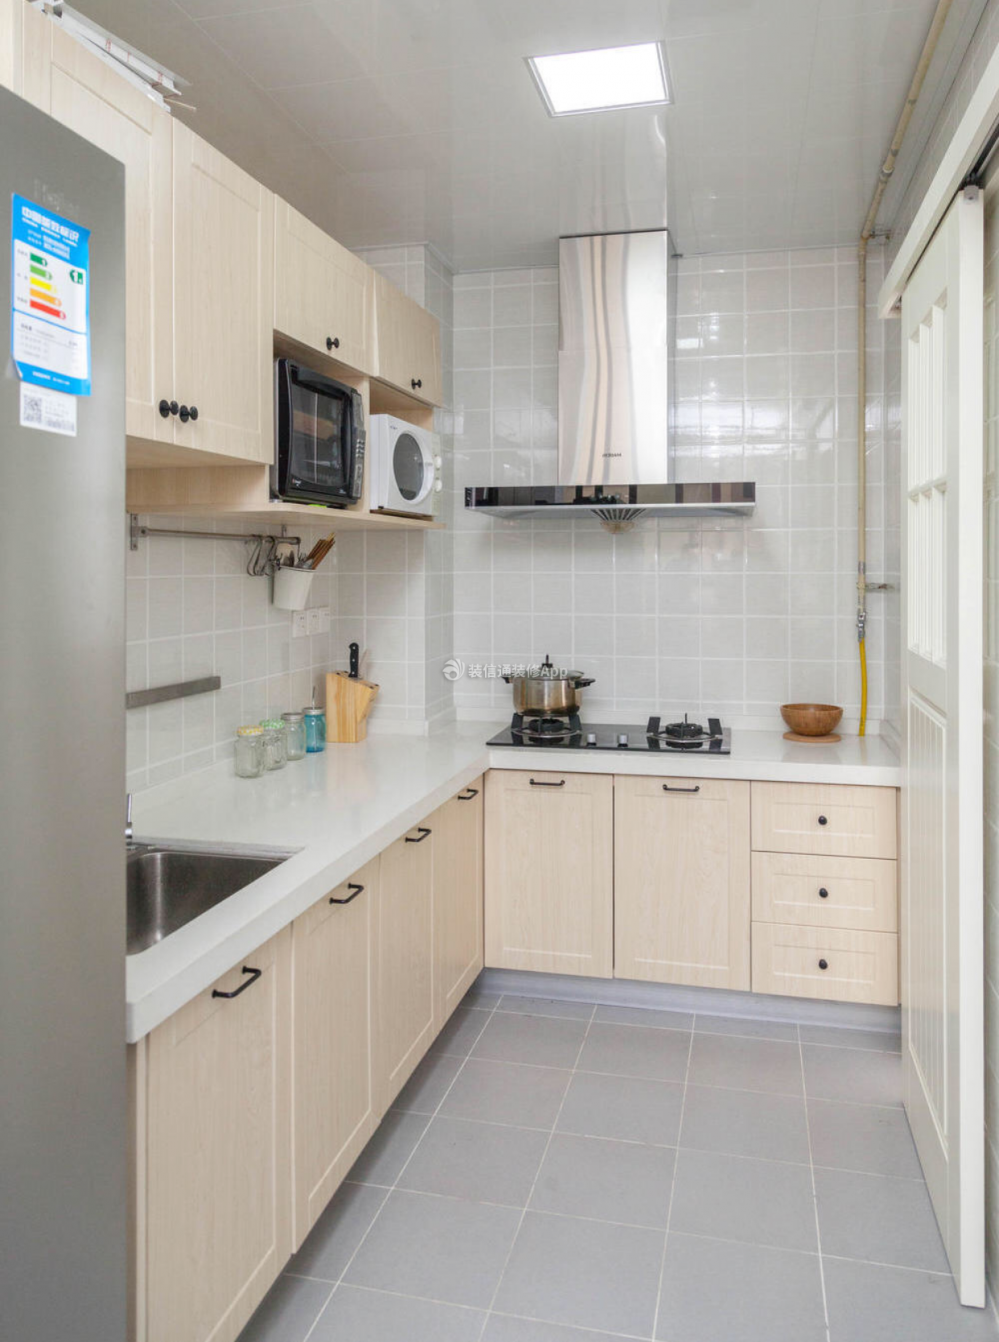 100平米房子厨房橱柜装修效果图